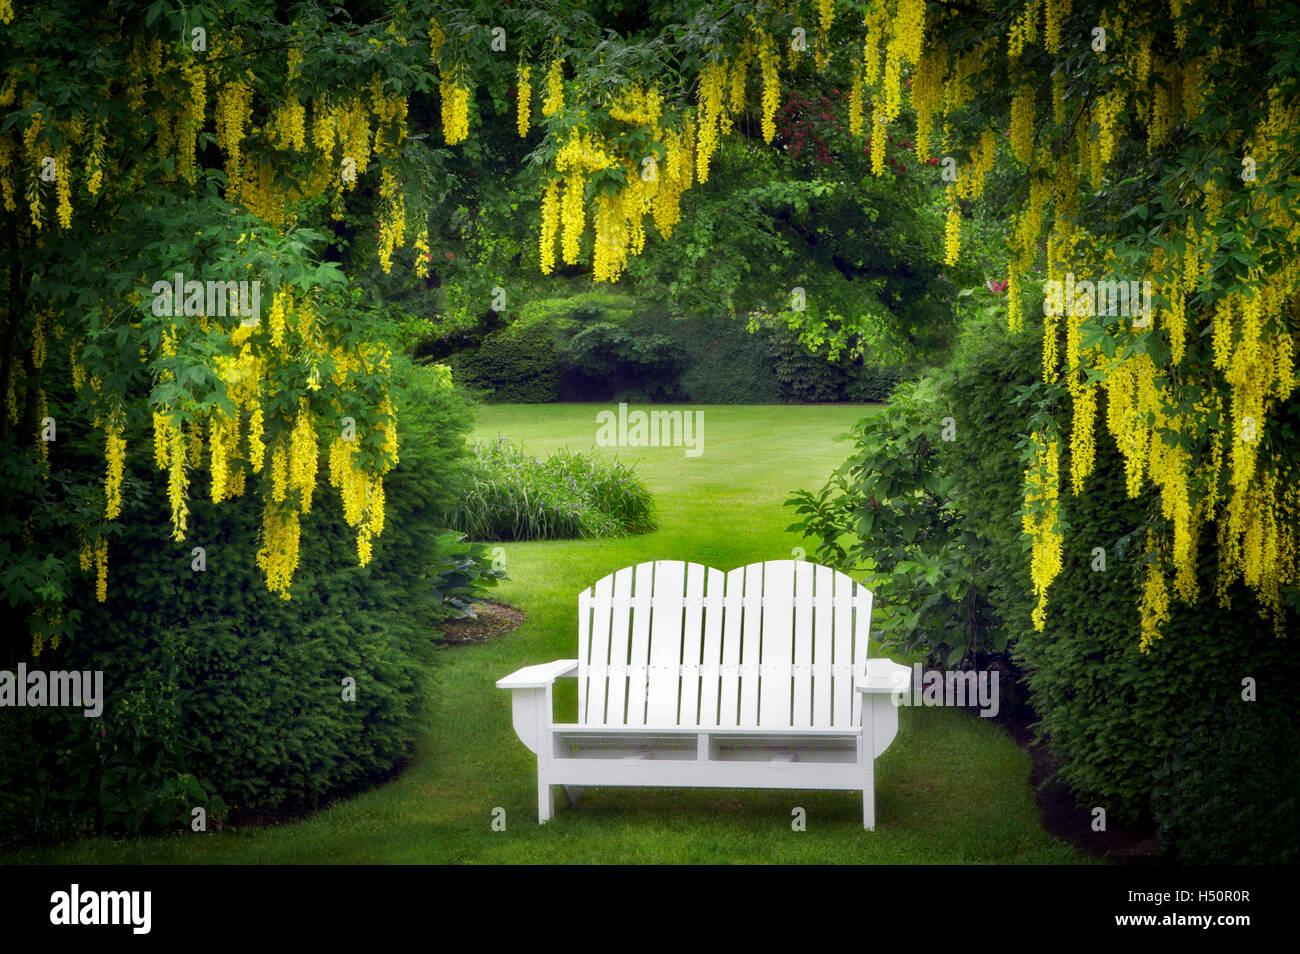 Bench and Golden Chain tree. Schreiner's Iris Gardens. Oregon Stock Photo